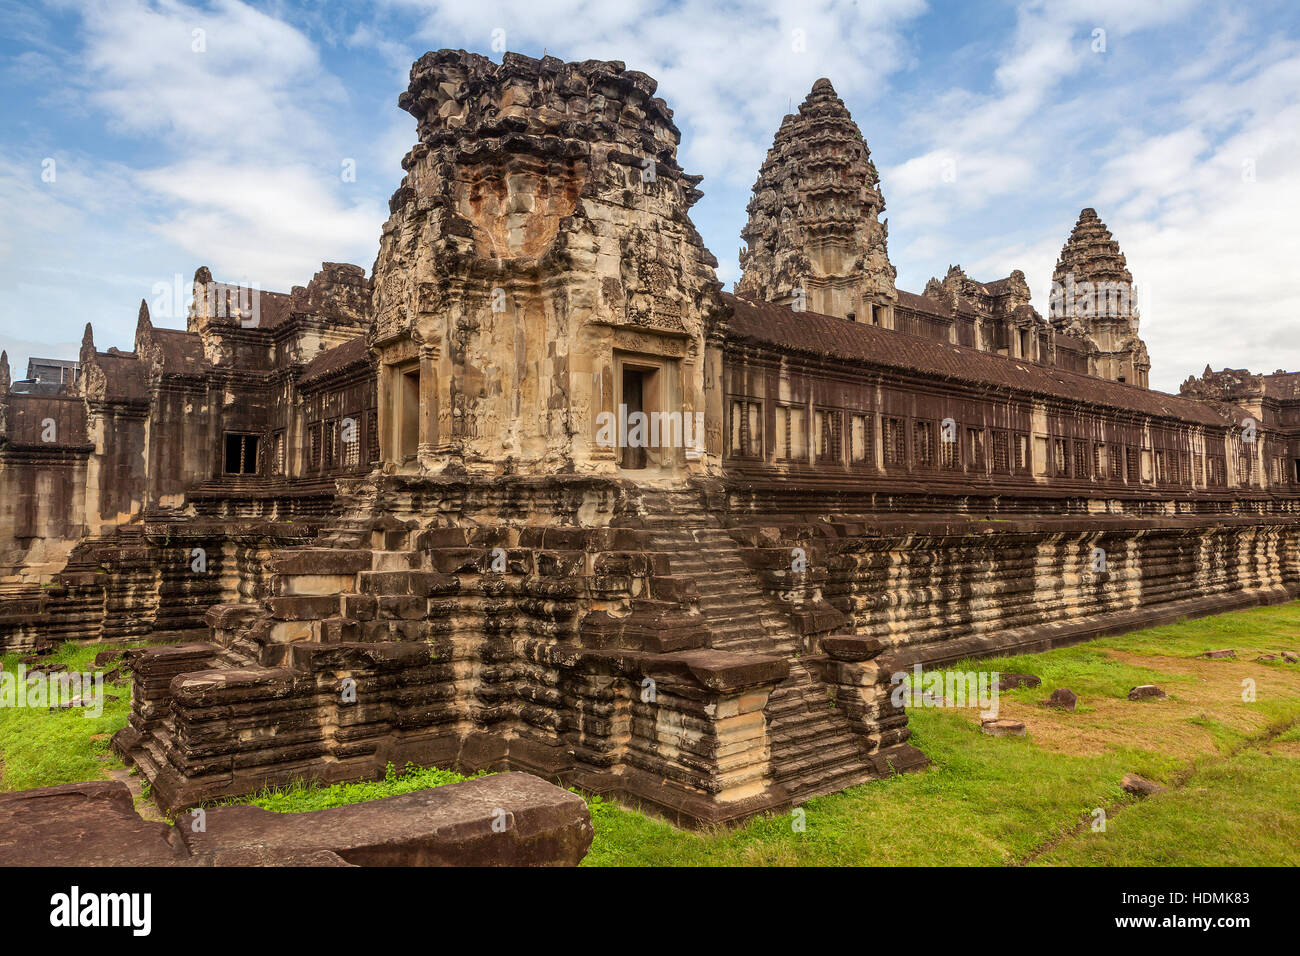 La sección interior de la 12 ª Siglo Khmer complejo del templo de Angkor Wat, Siem Reap, Reino de Camboya. Foto de stock